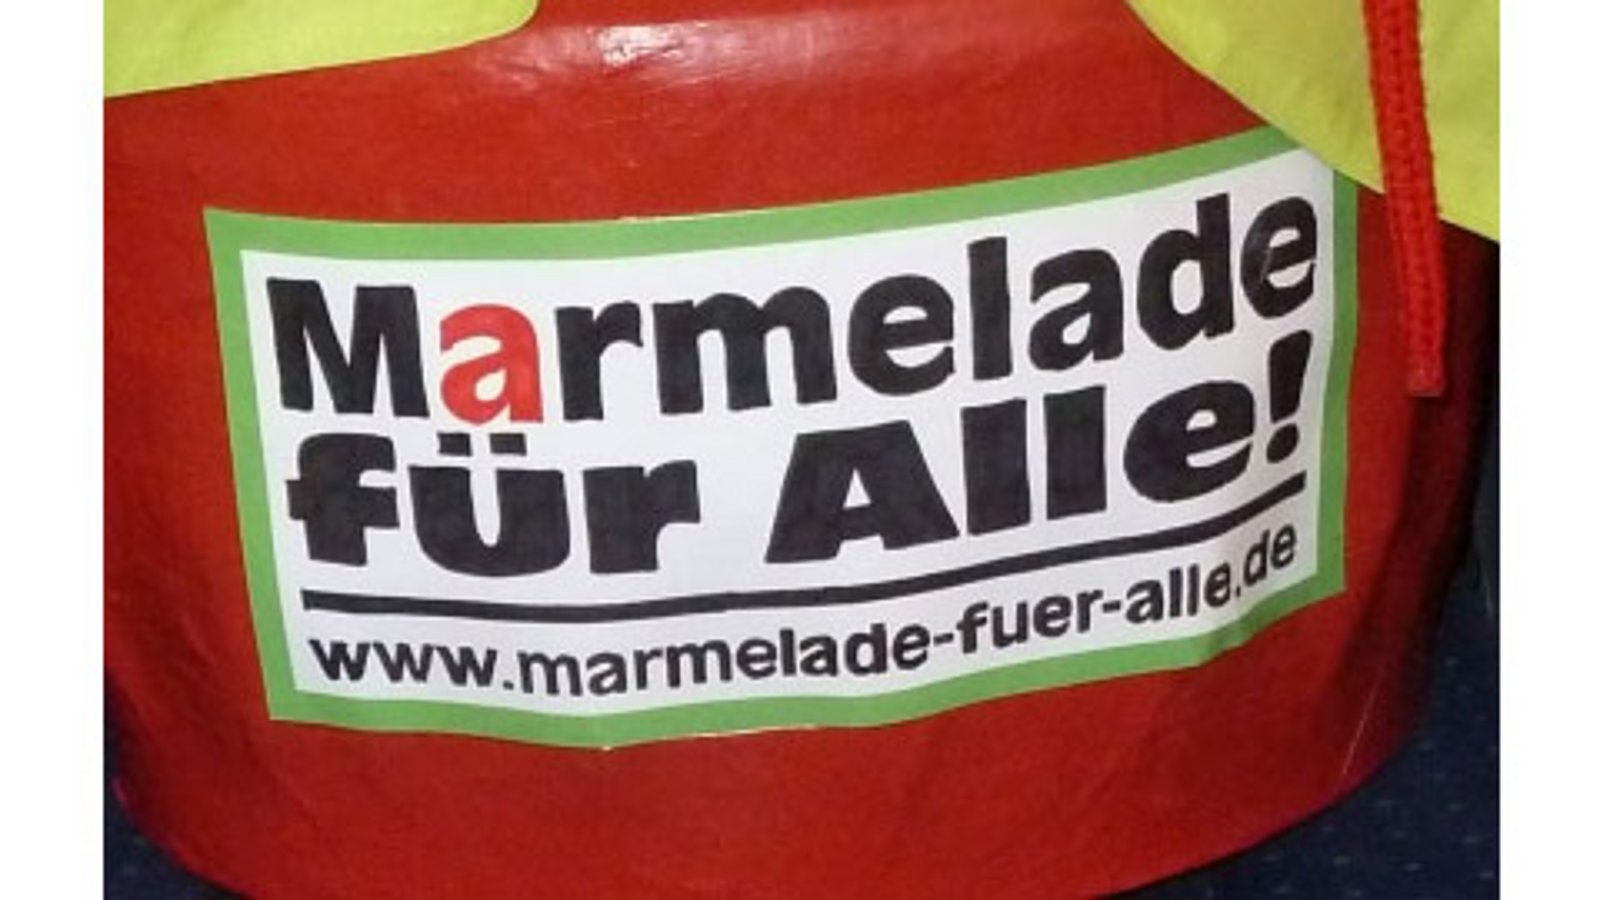 Überdimensionales Marmeladenglas mit dem Aufdruck "Marmelade für alle!" und "www.marmelade-fuer-alle.de"